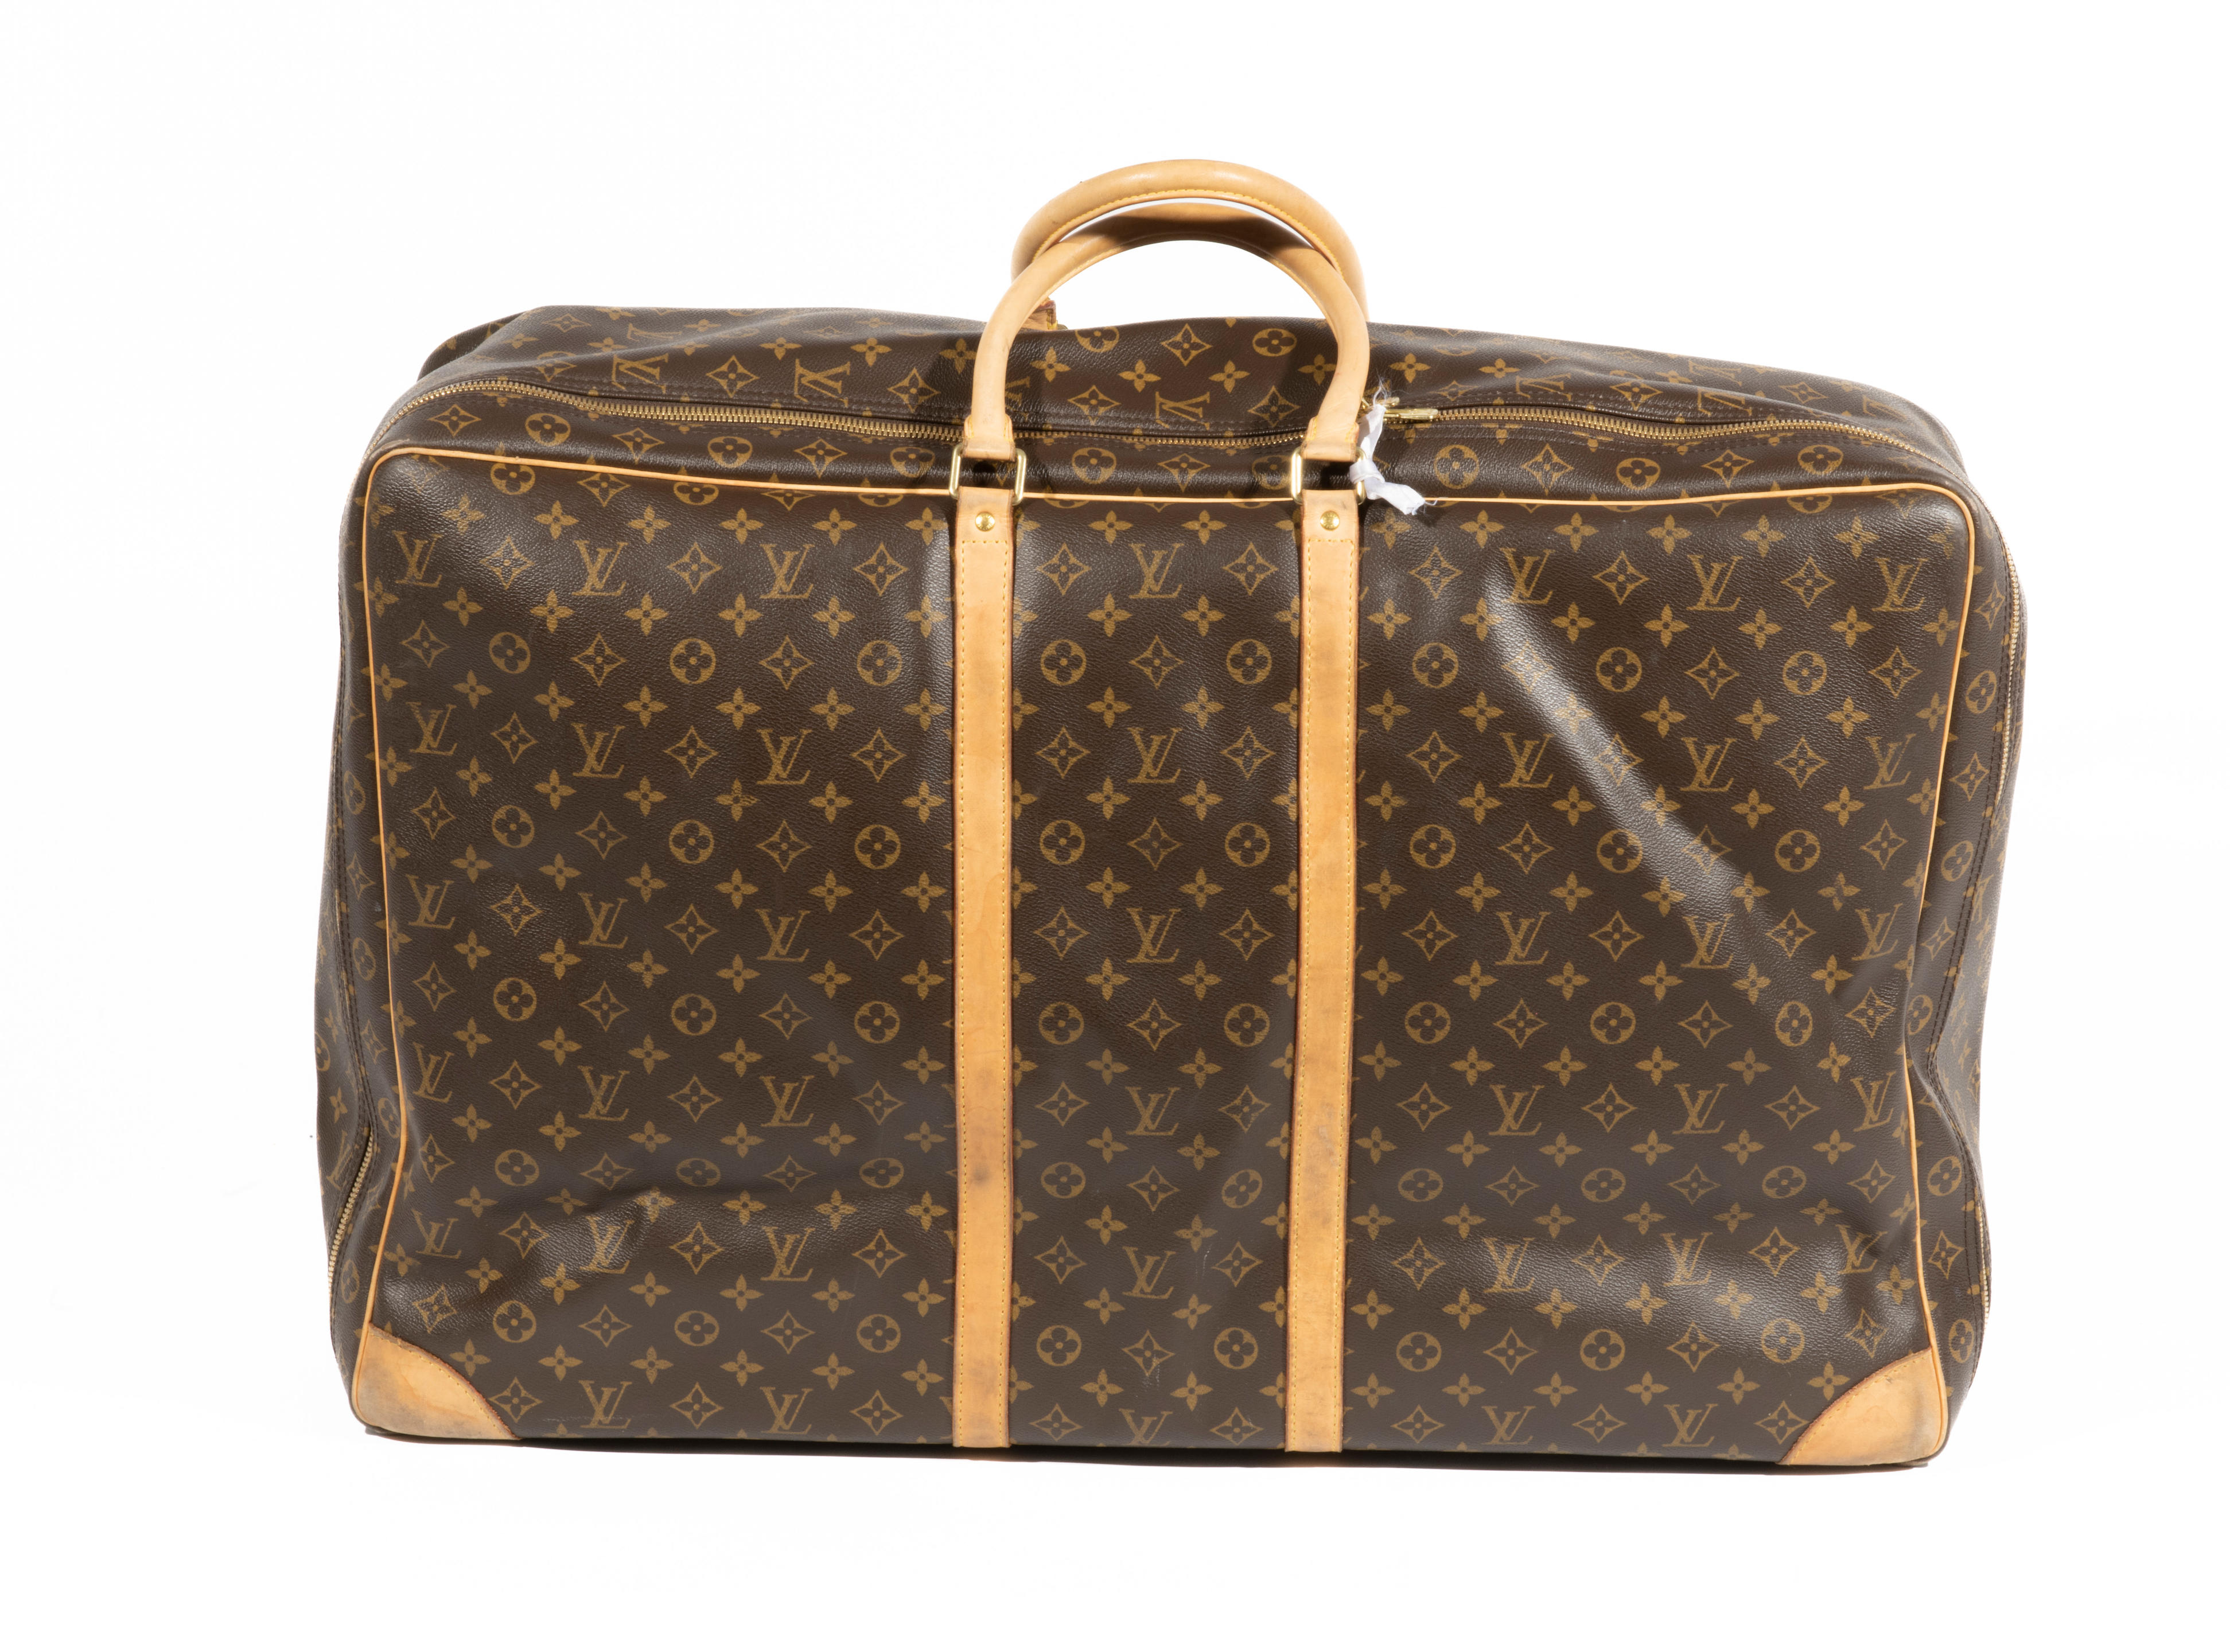 Sold at Auction: Louis Vuitton, Louis Vuitton, valise souple